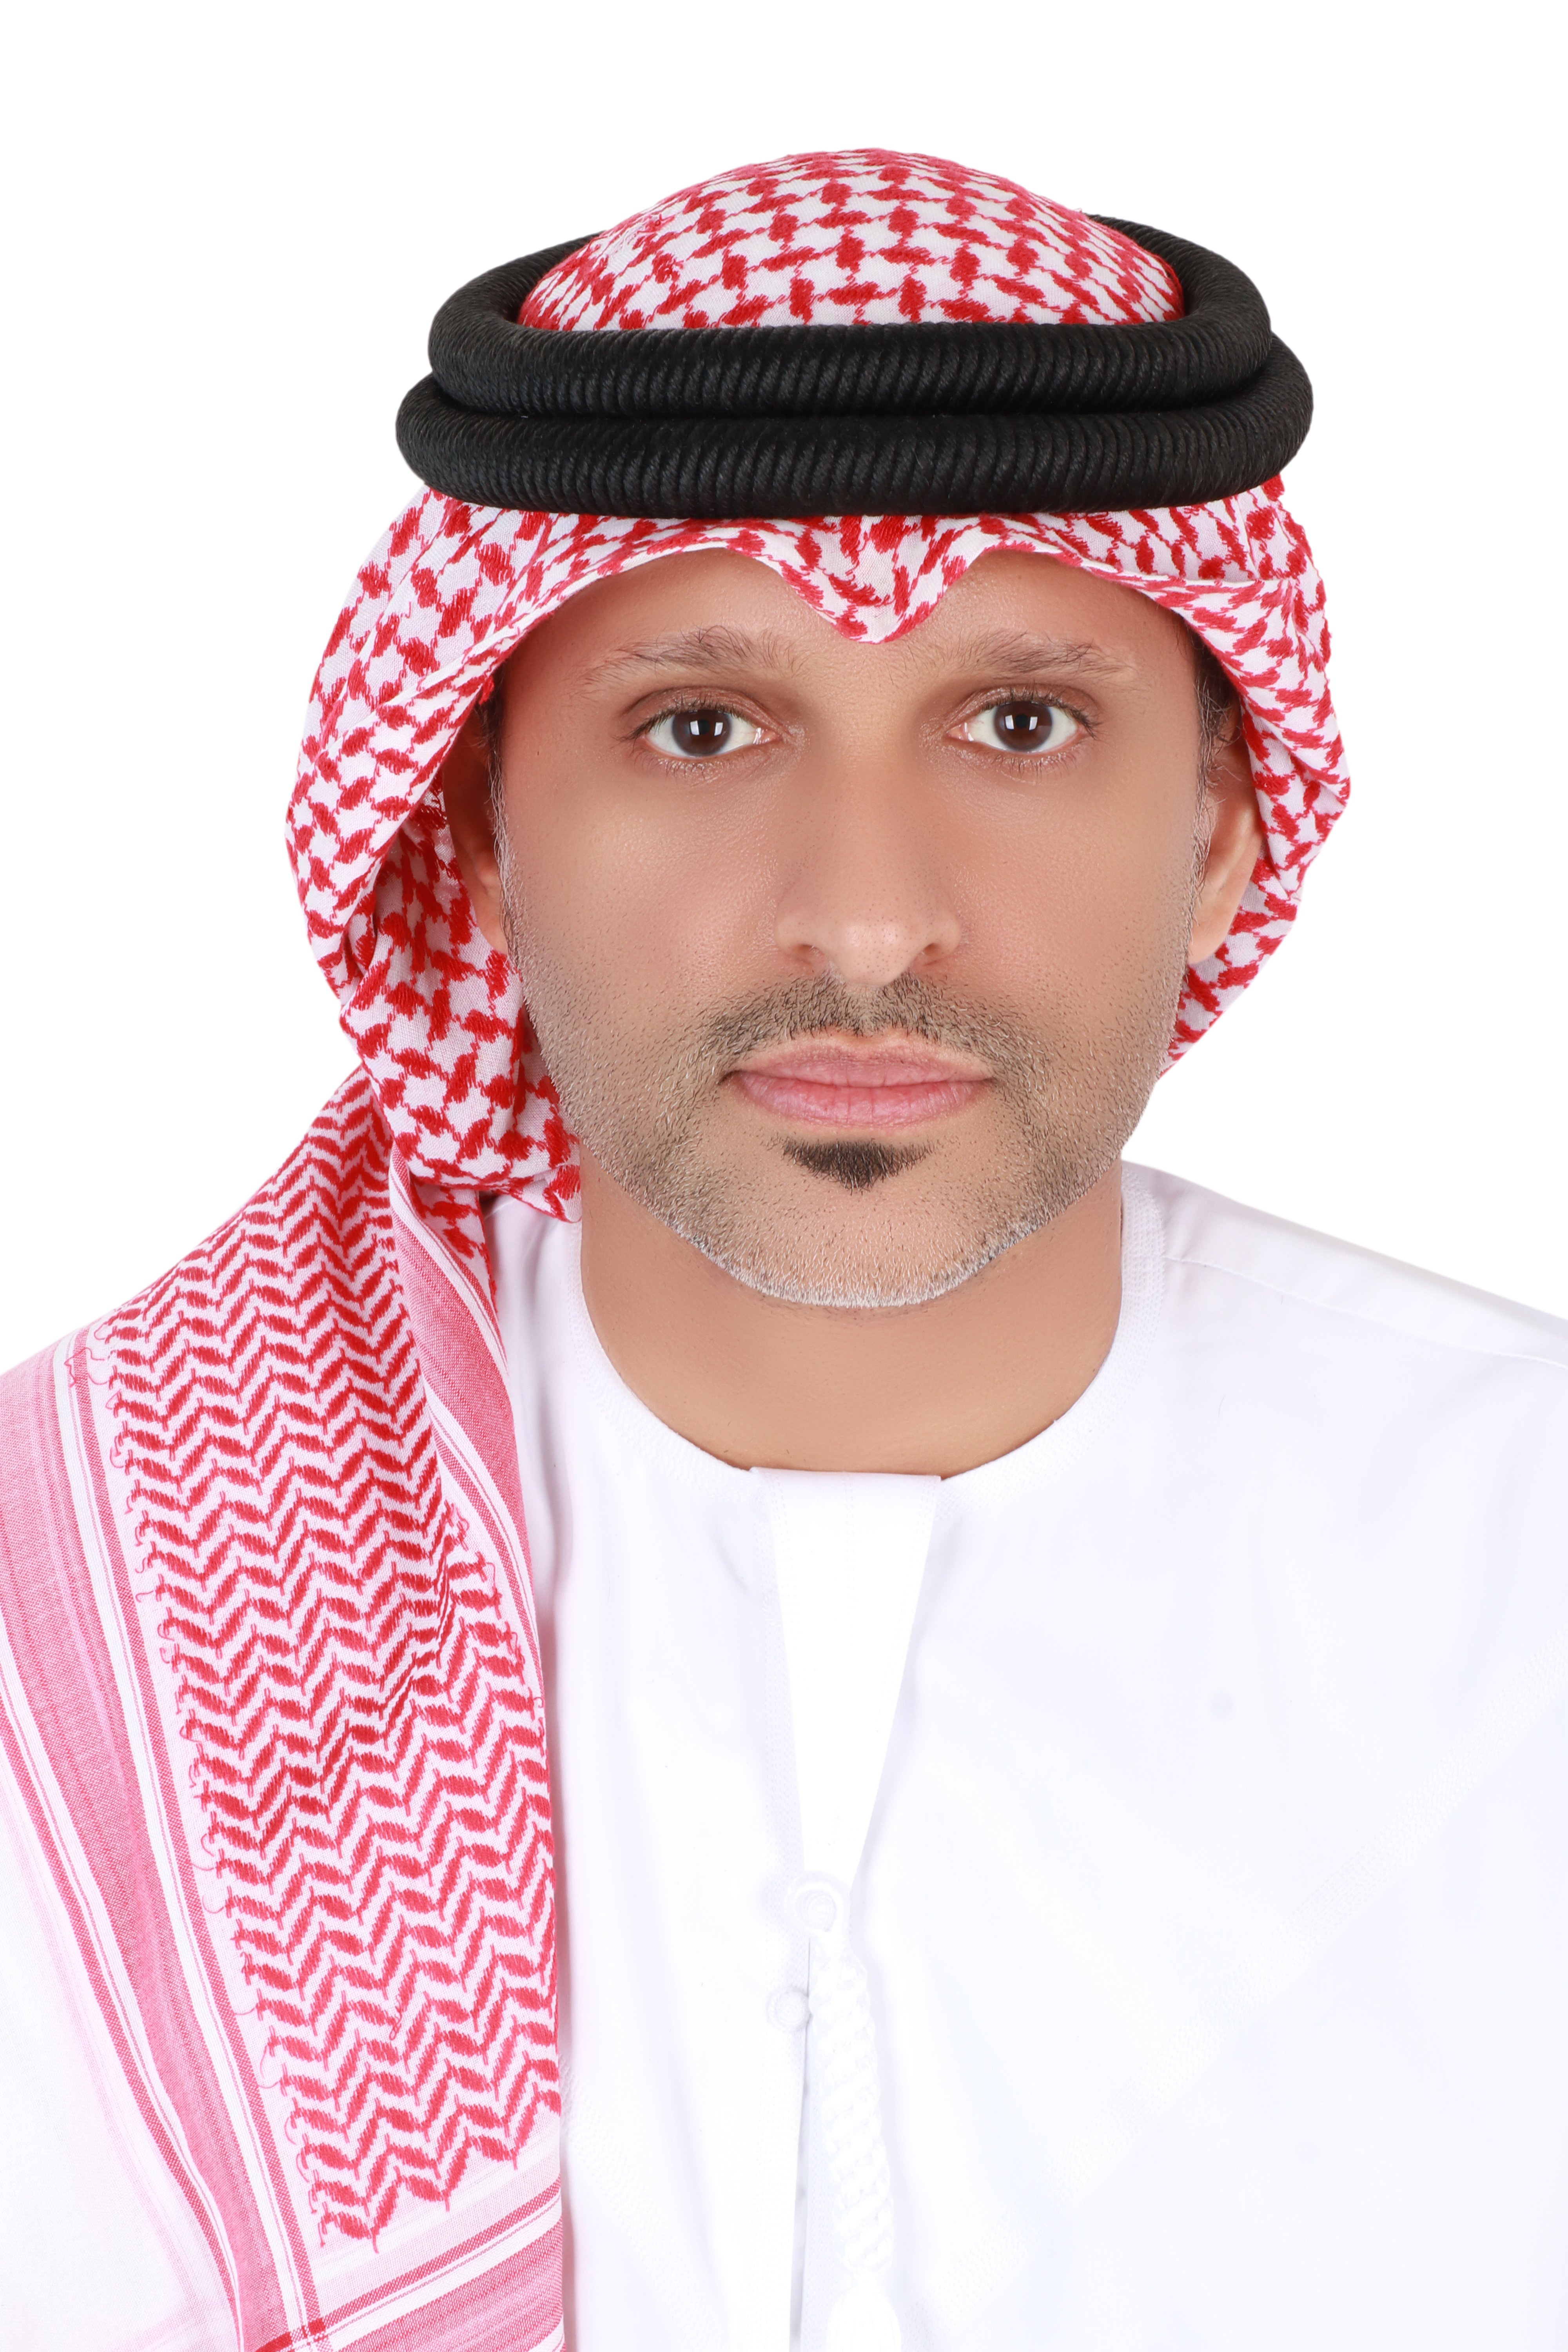 Ahmed Al Neaimi